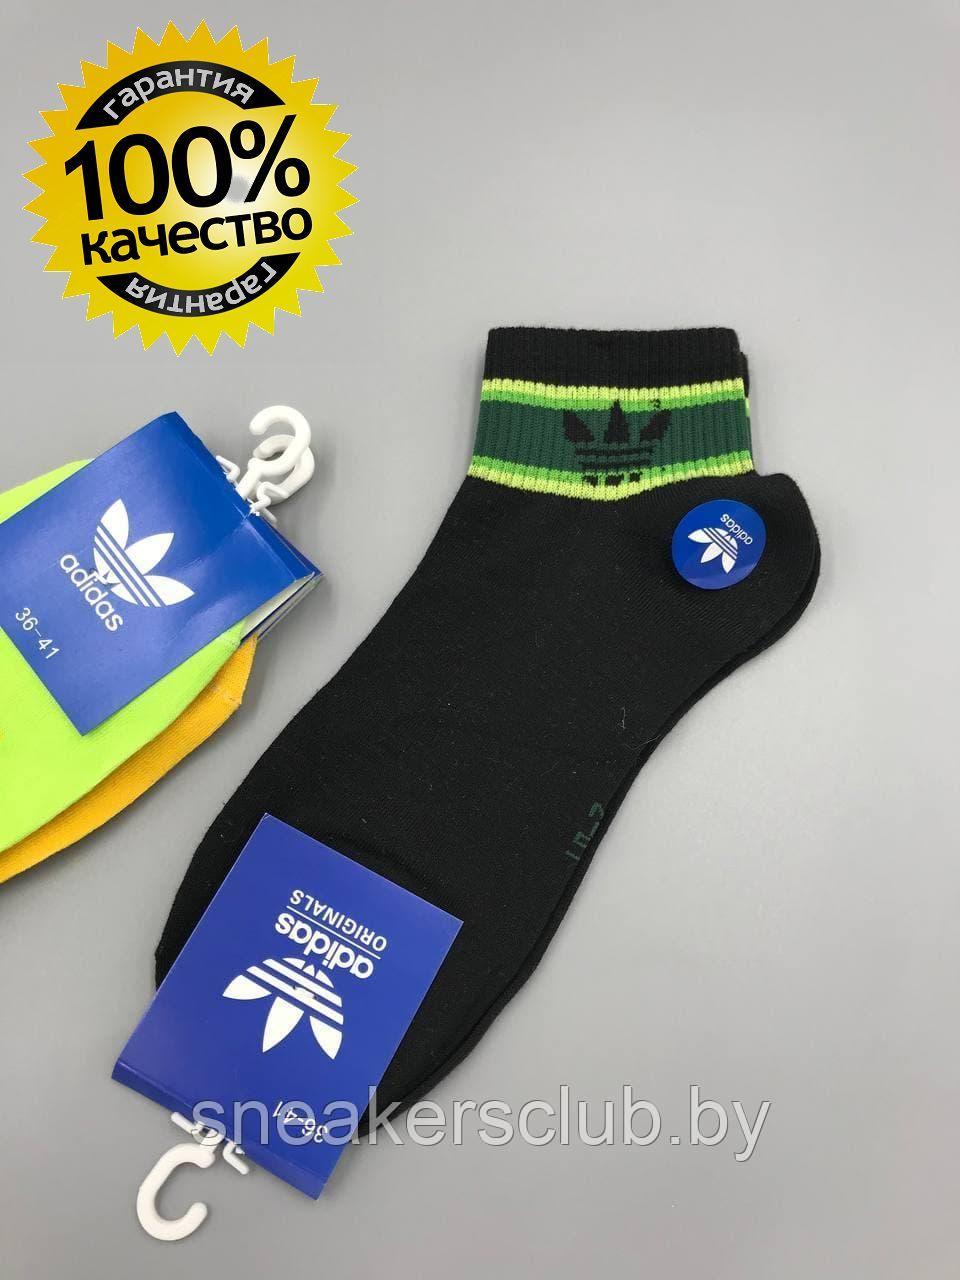 Яркие носки Adidas / размер 36-41 / хлопковые носки / носки для спорта и фитнеса